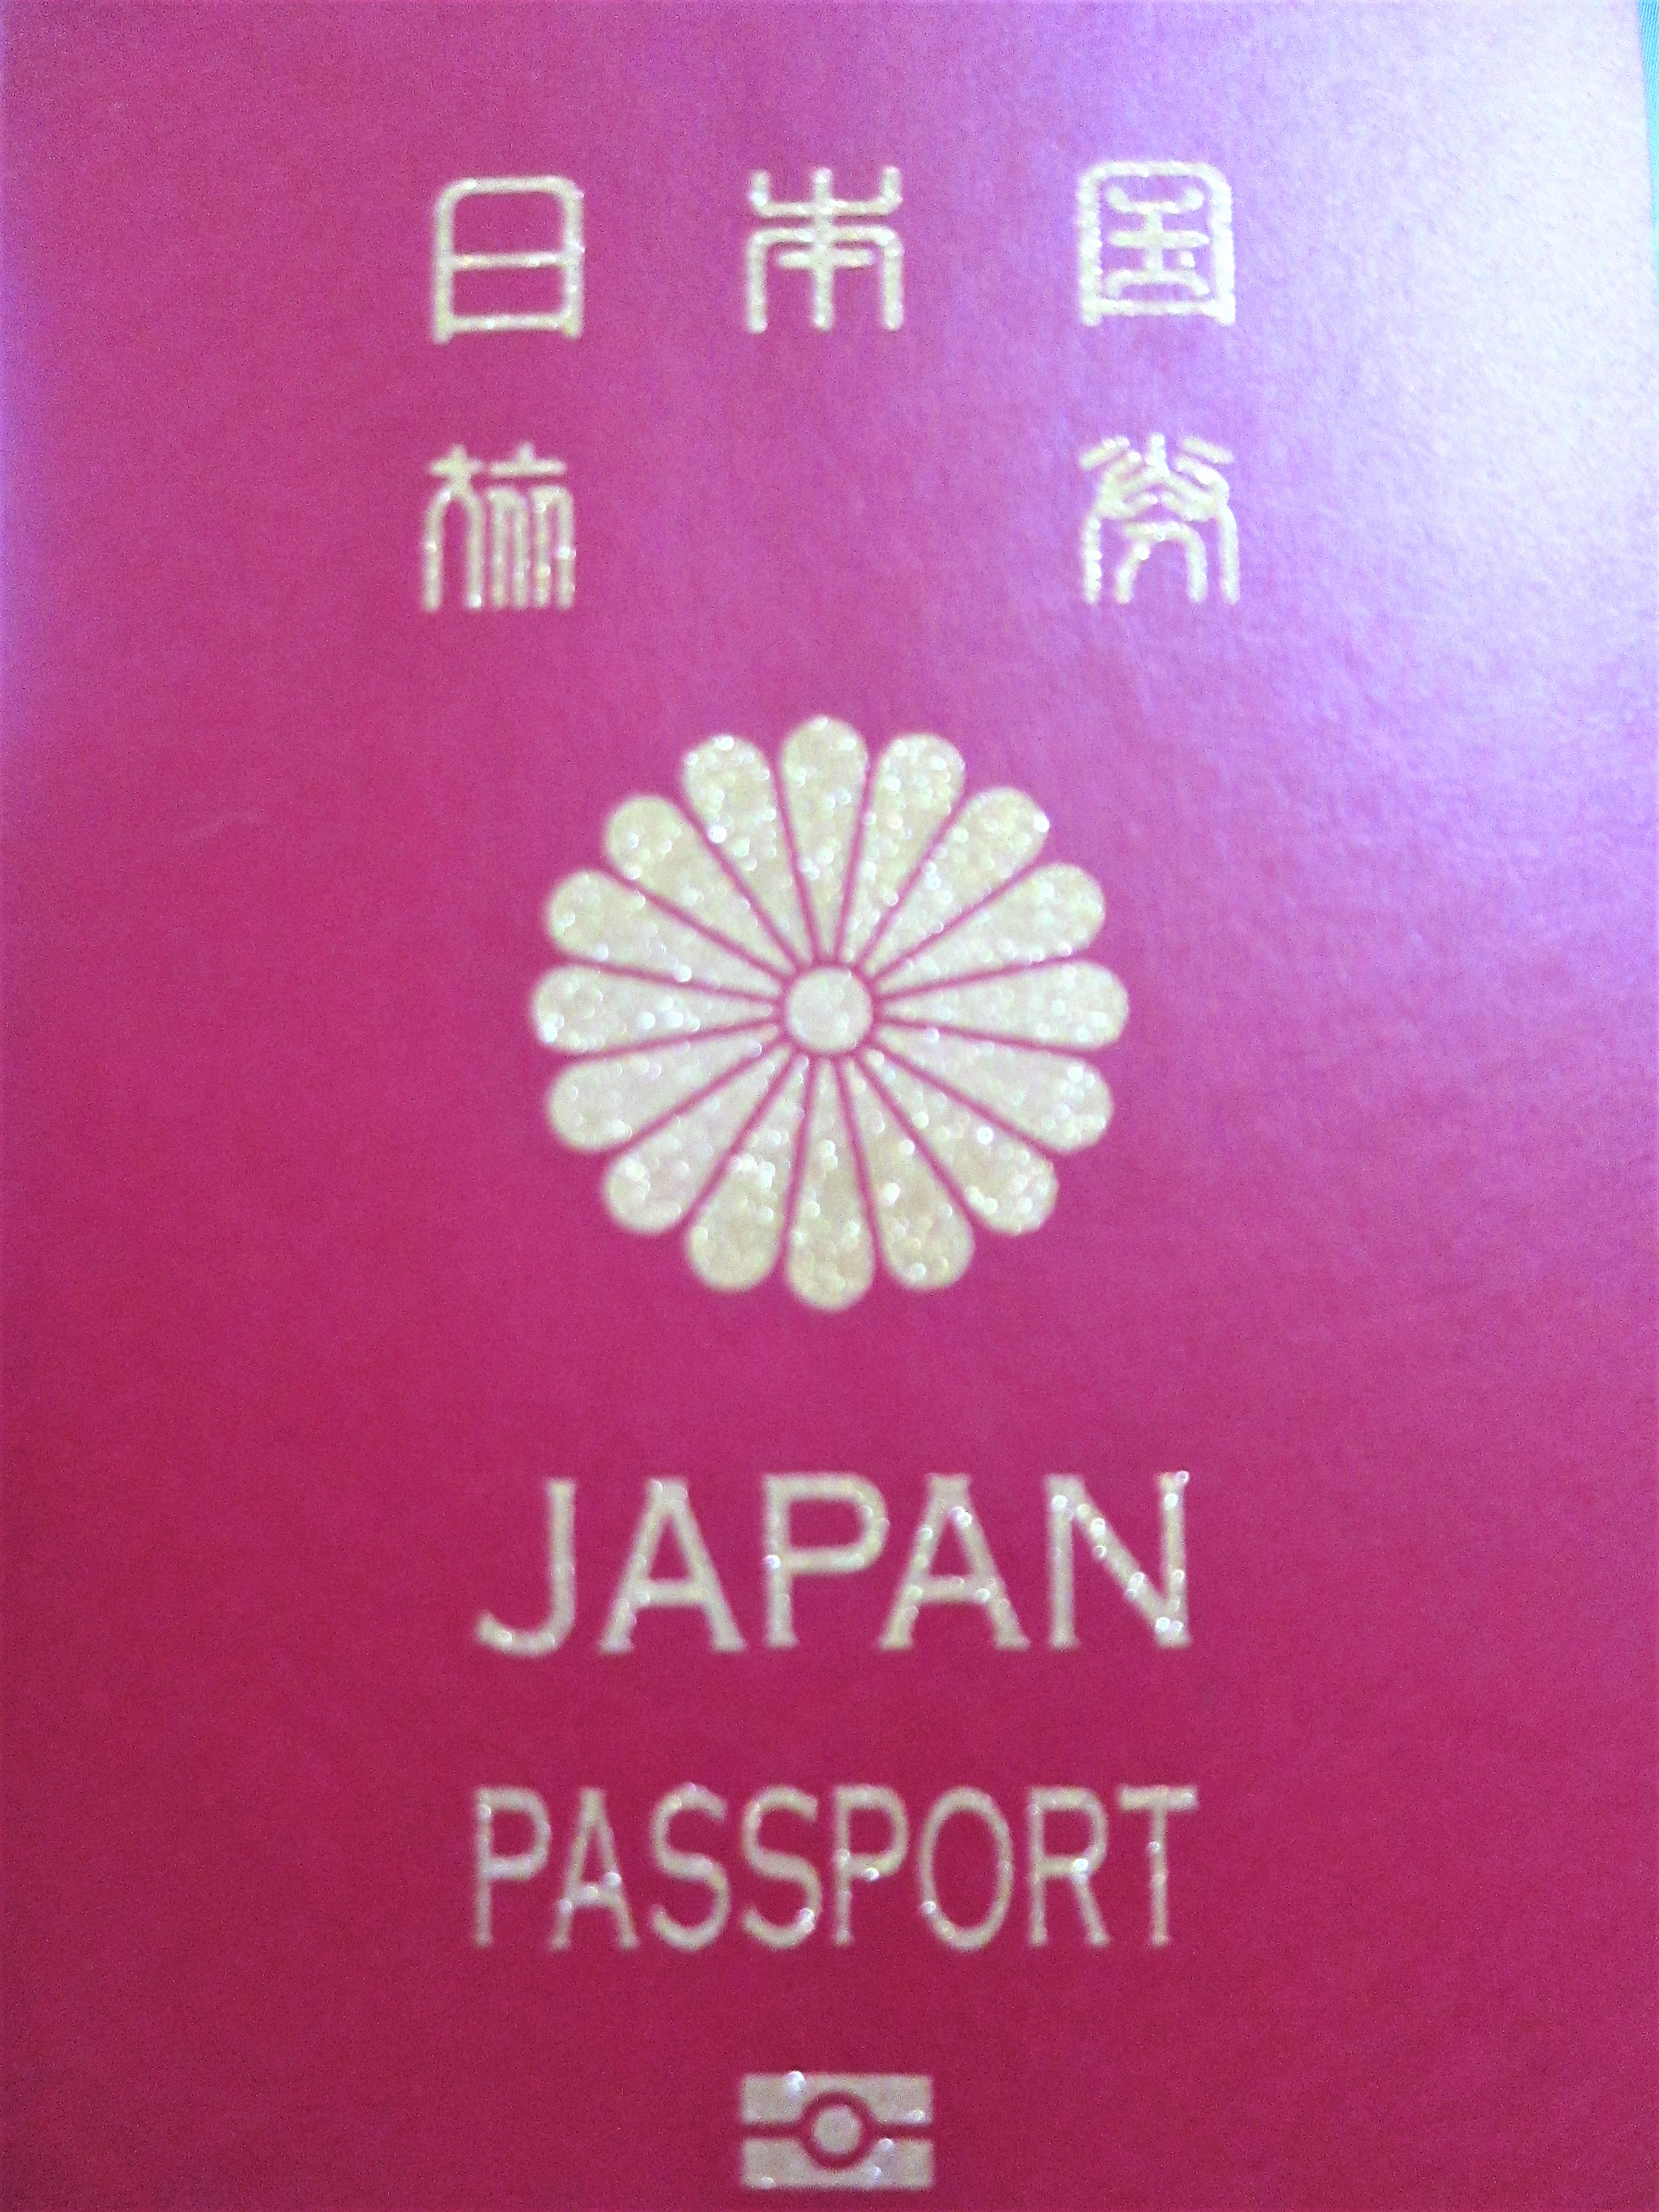 在ペルー日本国大使館、パスポート